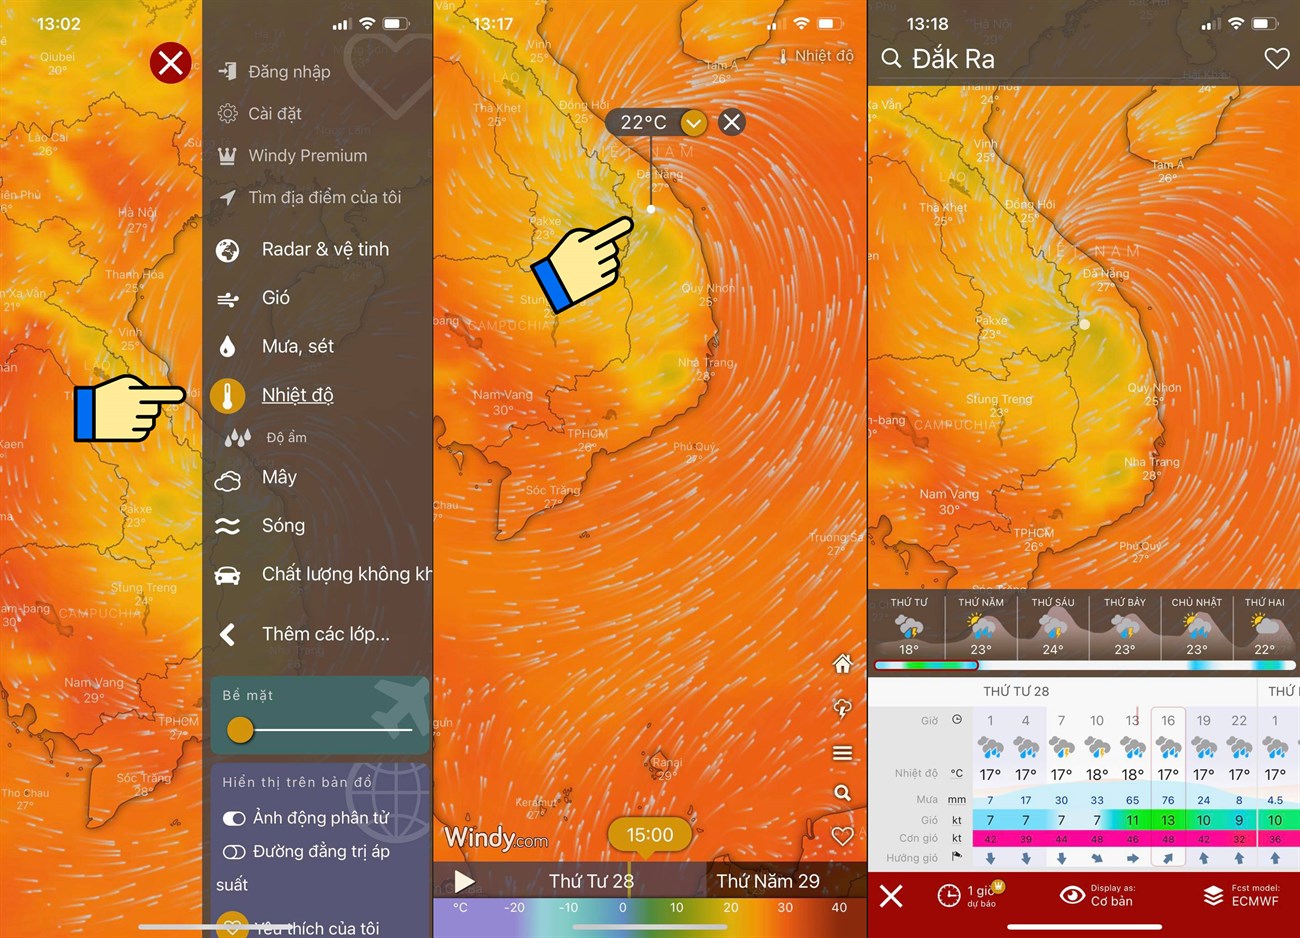 Cách xem bản đồ dự báo thời tiết, bão lũ, thiên tai Việt Nam trực tiếp qua vệ tinh > Theo dõi nhiệt độ trên bản đồ